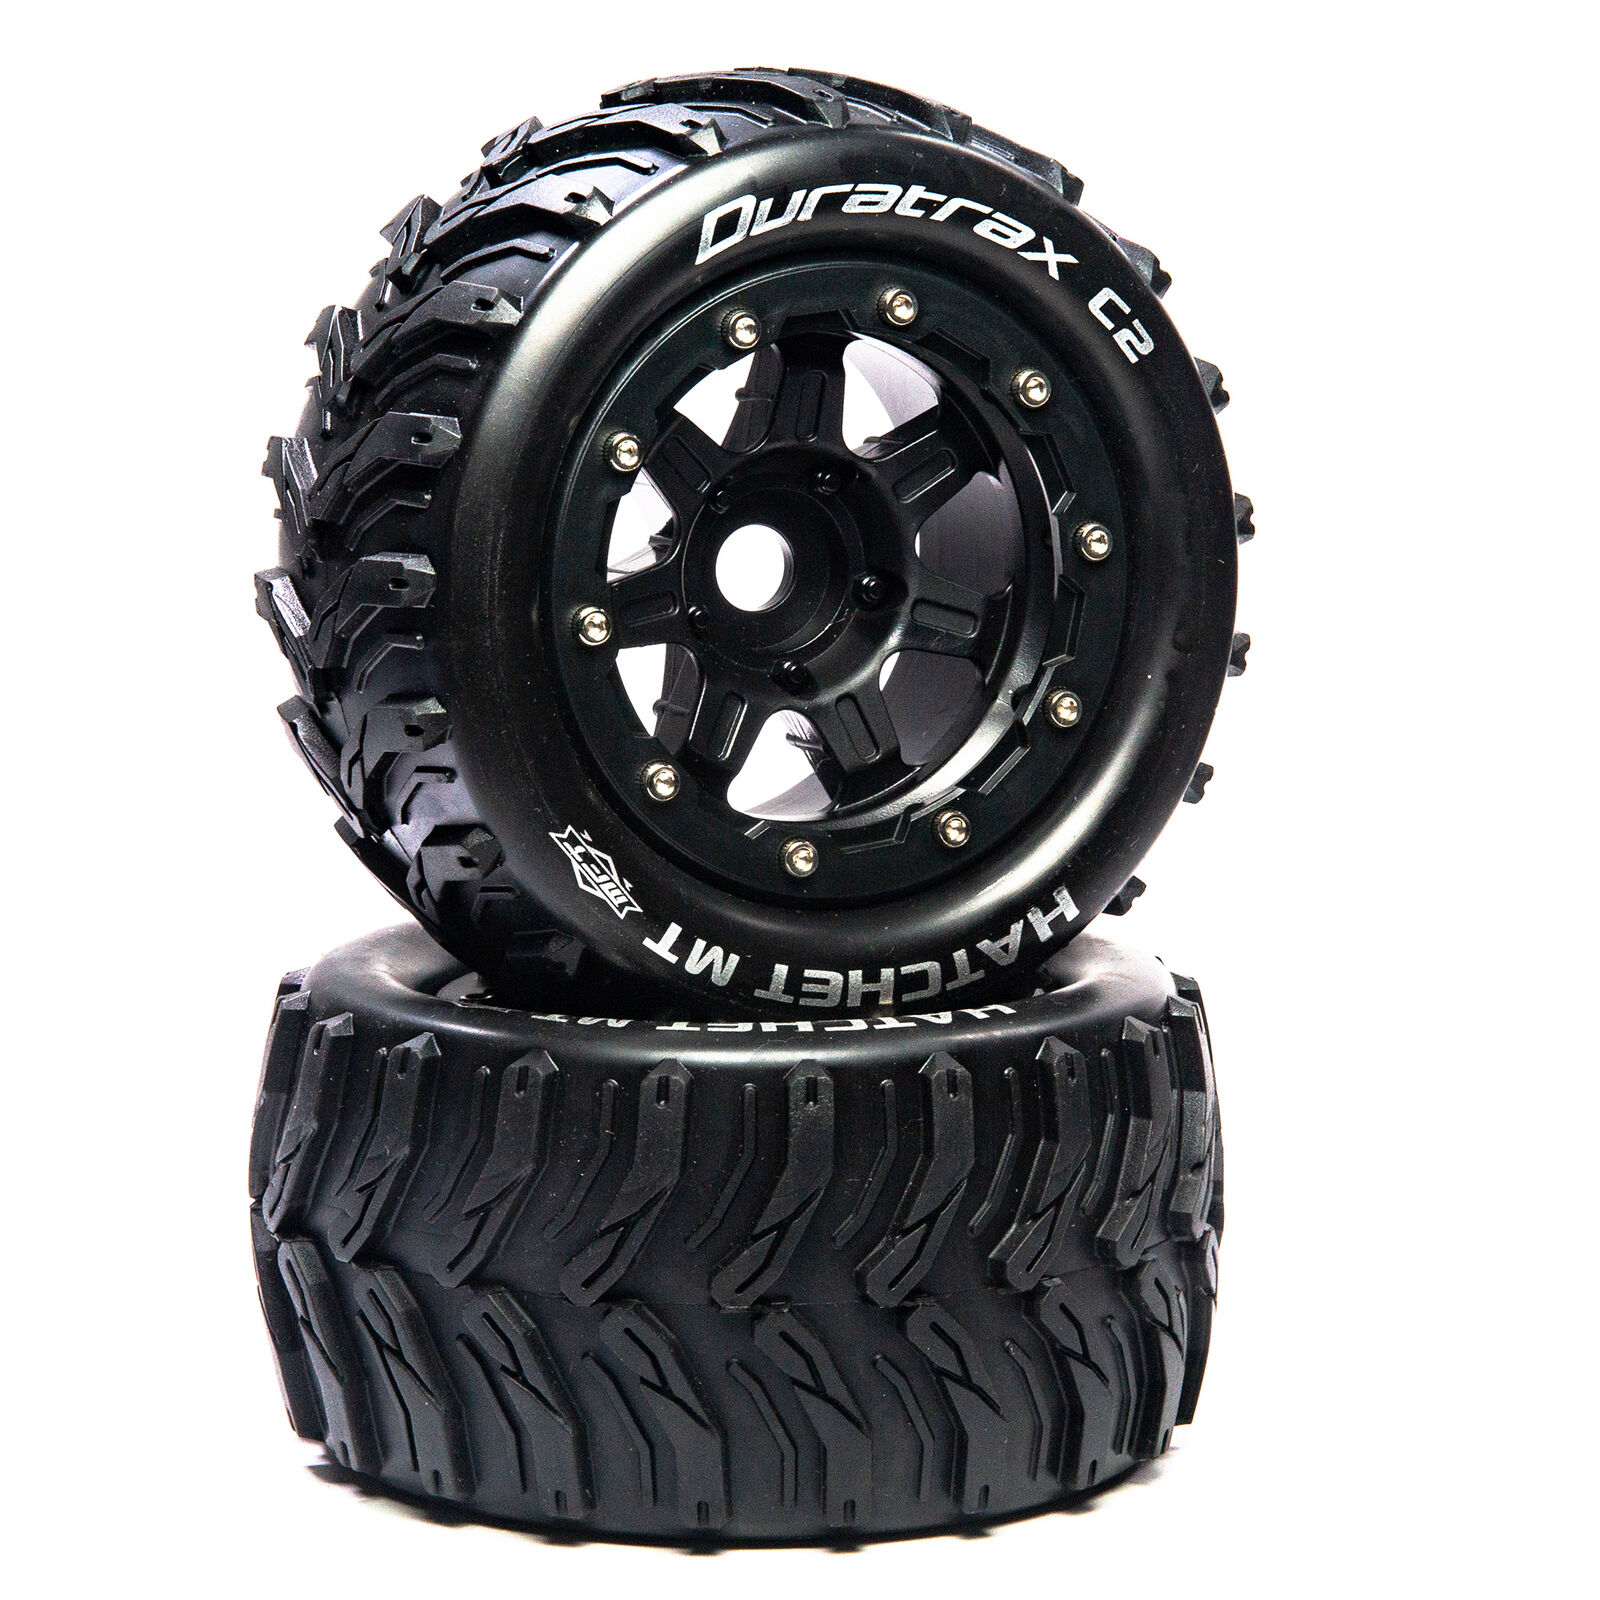 Hatchet MT Belt 2.8" Mounted Front/Rear Tires .5 Offset 17mm, Black (2)